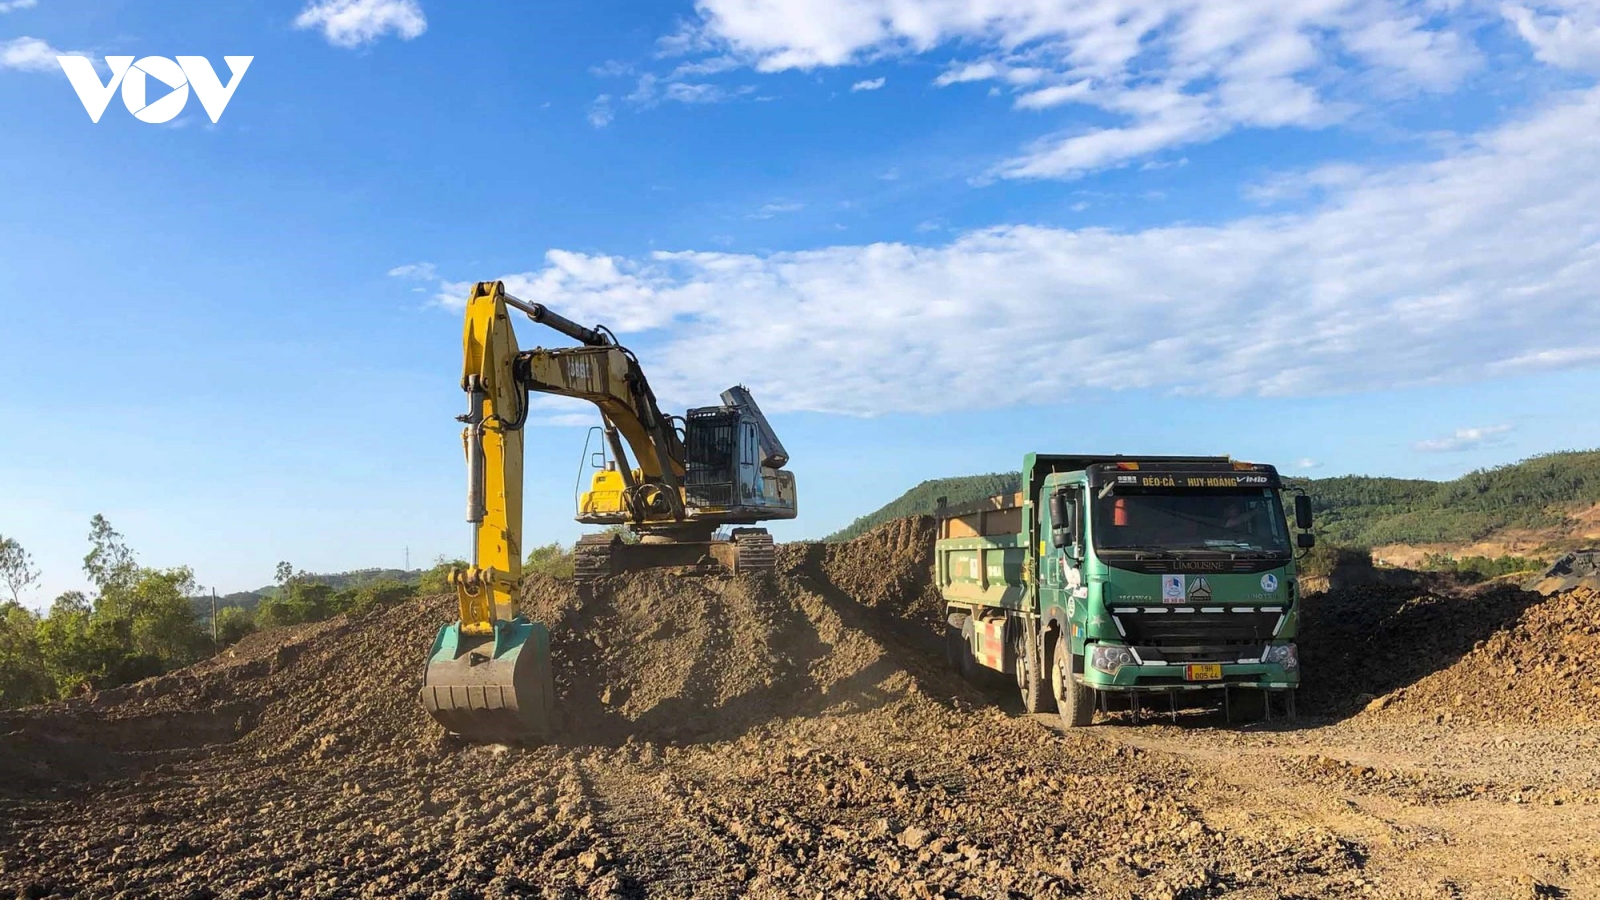 Cao tốc Bắc-Nam: Cho tận dụng đất, đá dư thừa để đắp nền đoạn Bùng-Vạn Ninh